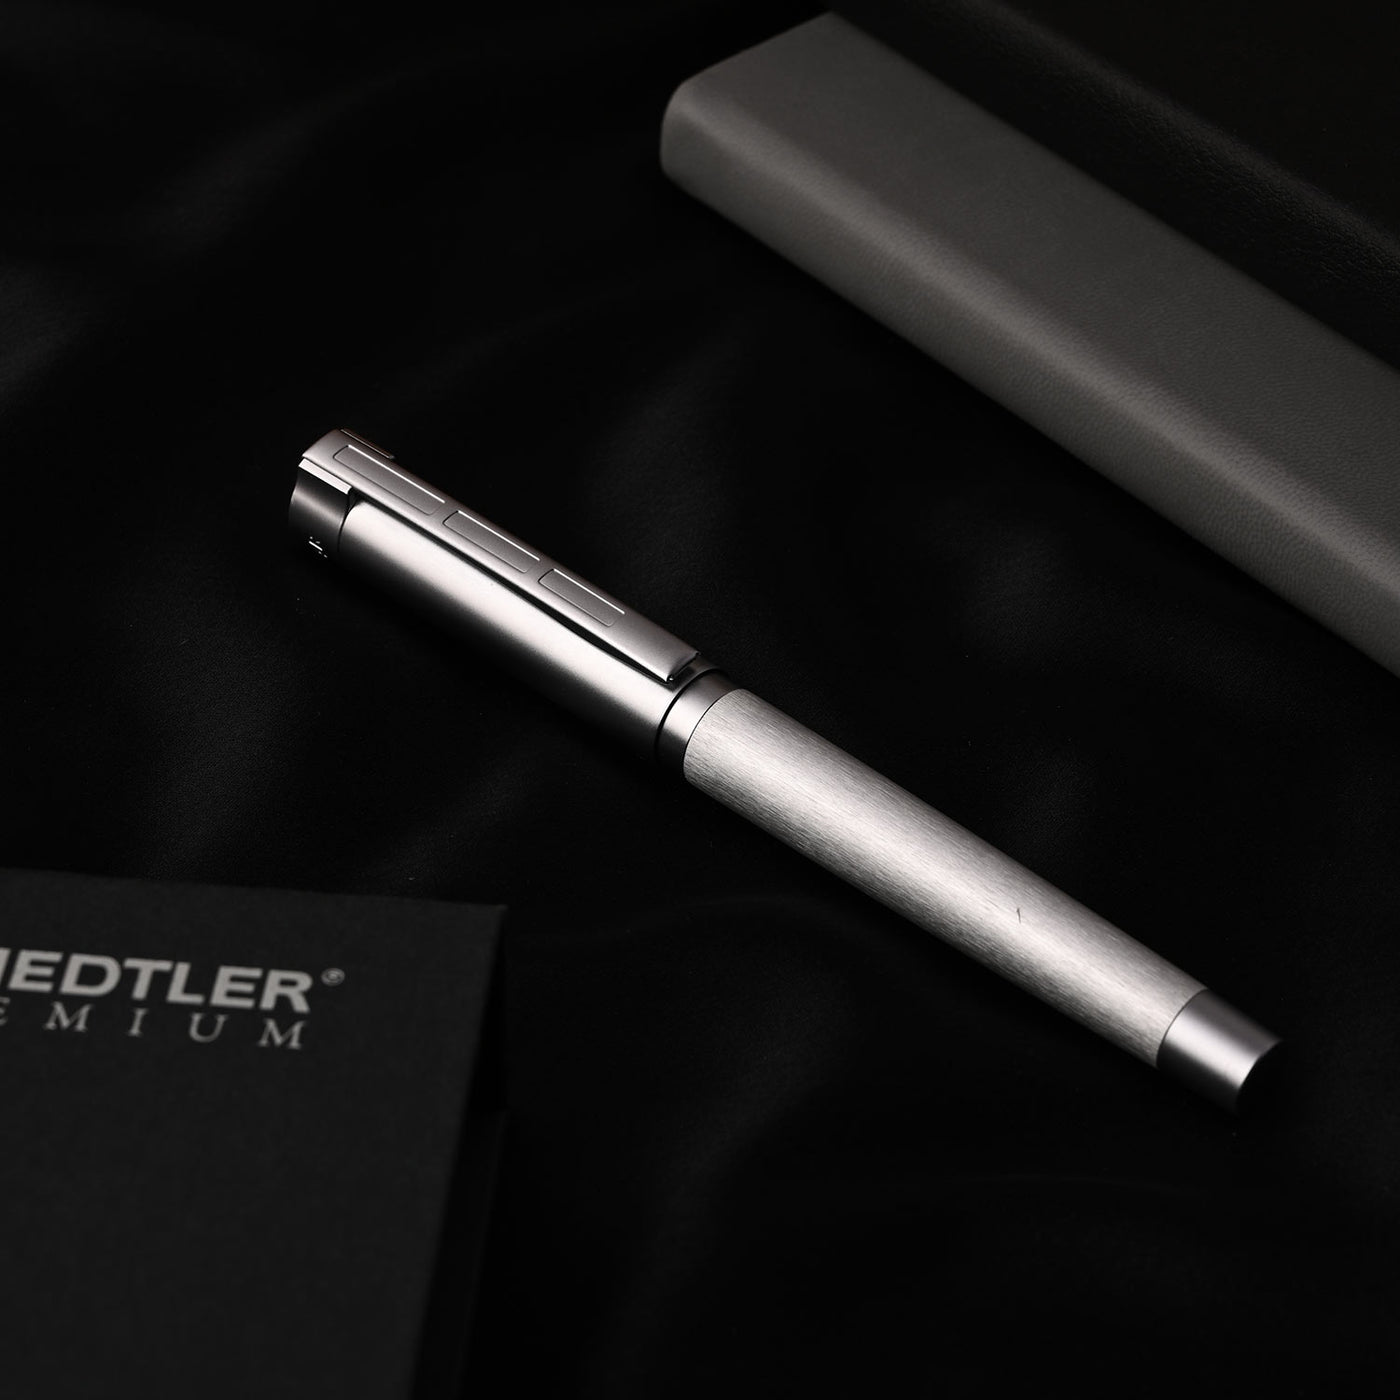 Staedtler Premium Metallum Fountain Pen - Silver CT 11